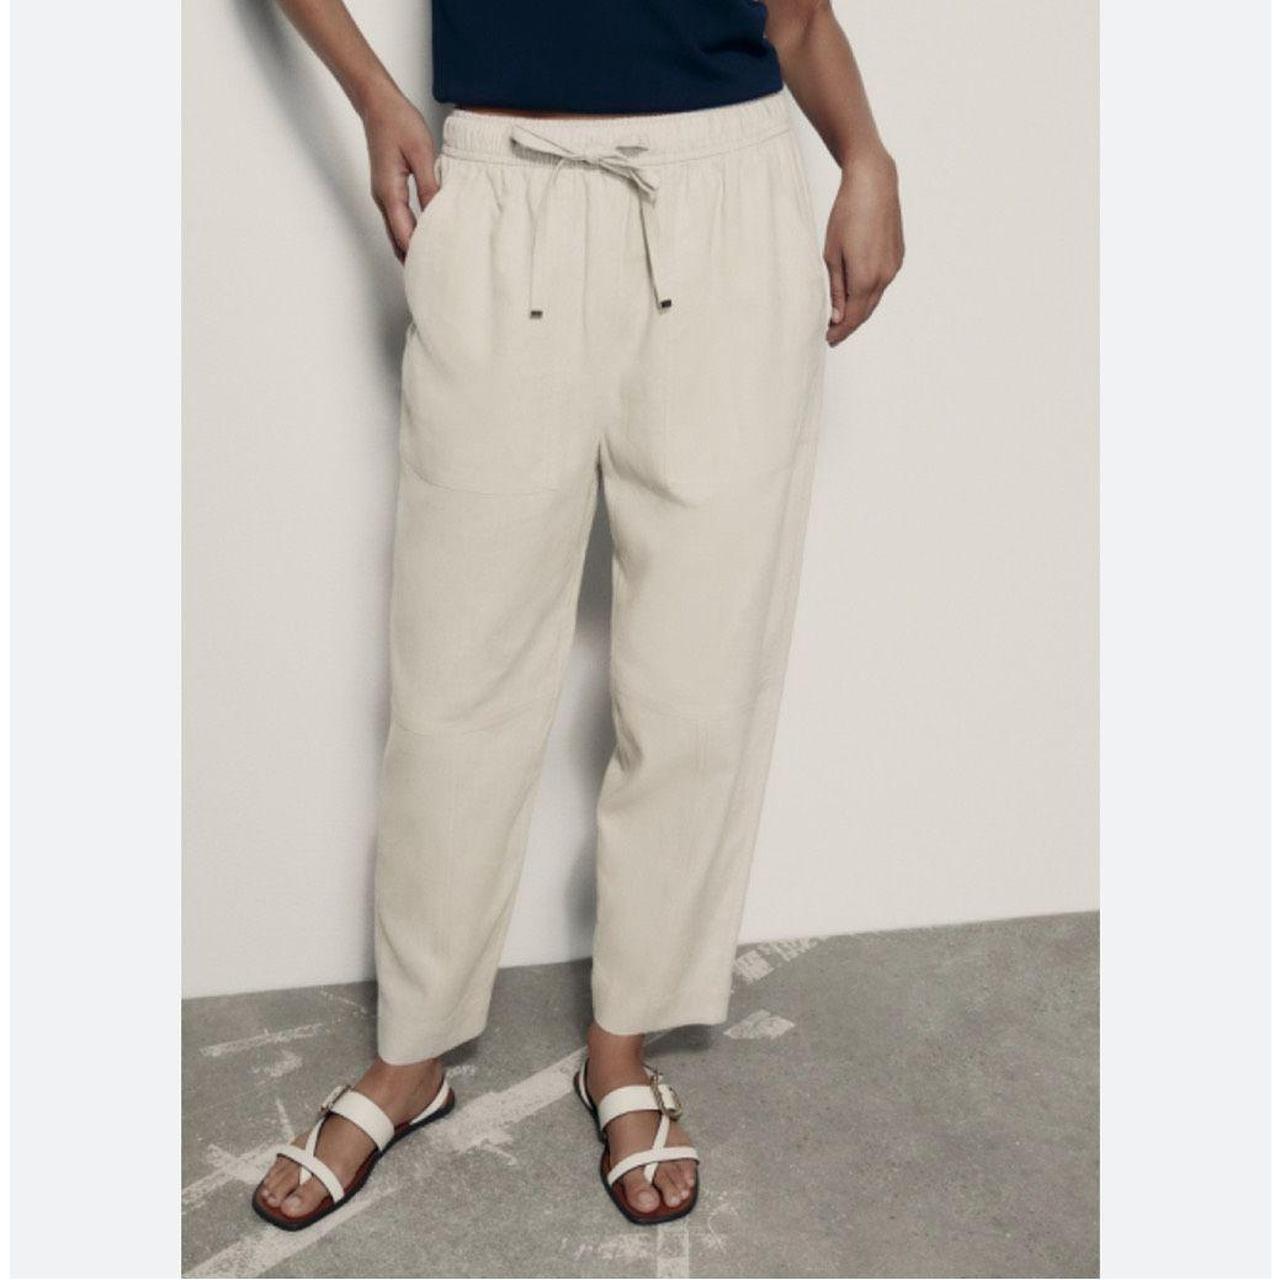 Zara Women's Linen Blend Carrot Fit Trouser Pants - Depop